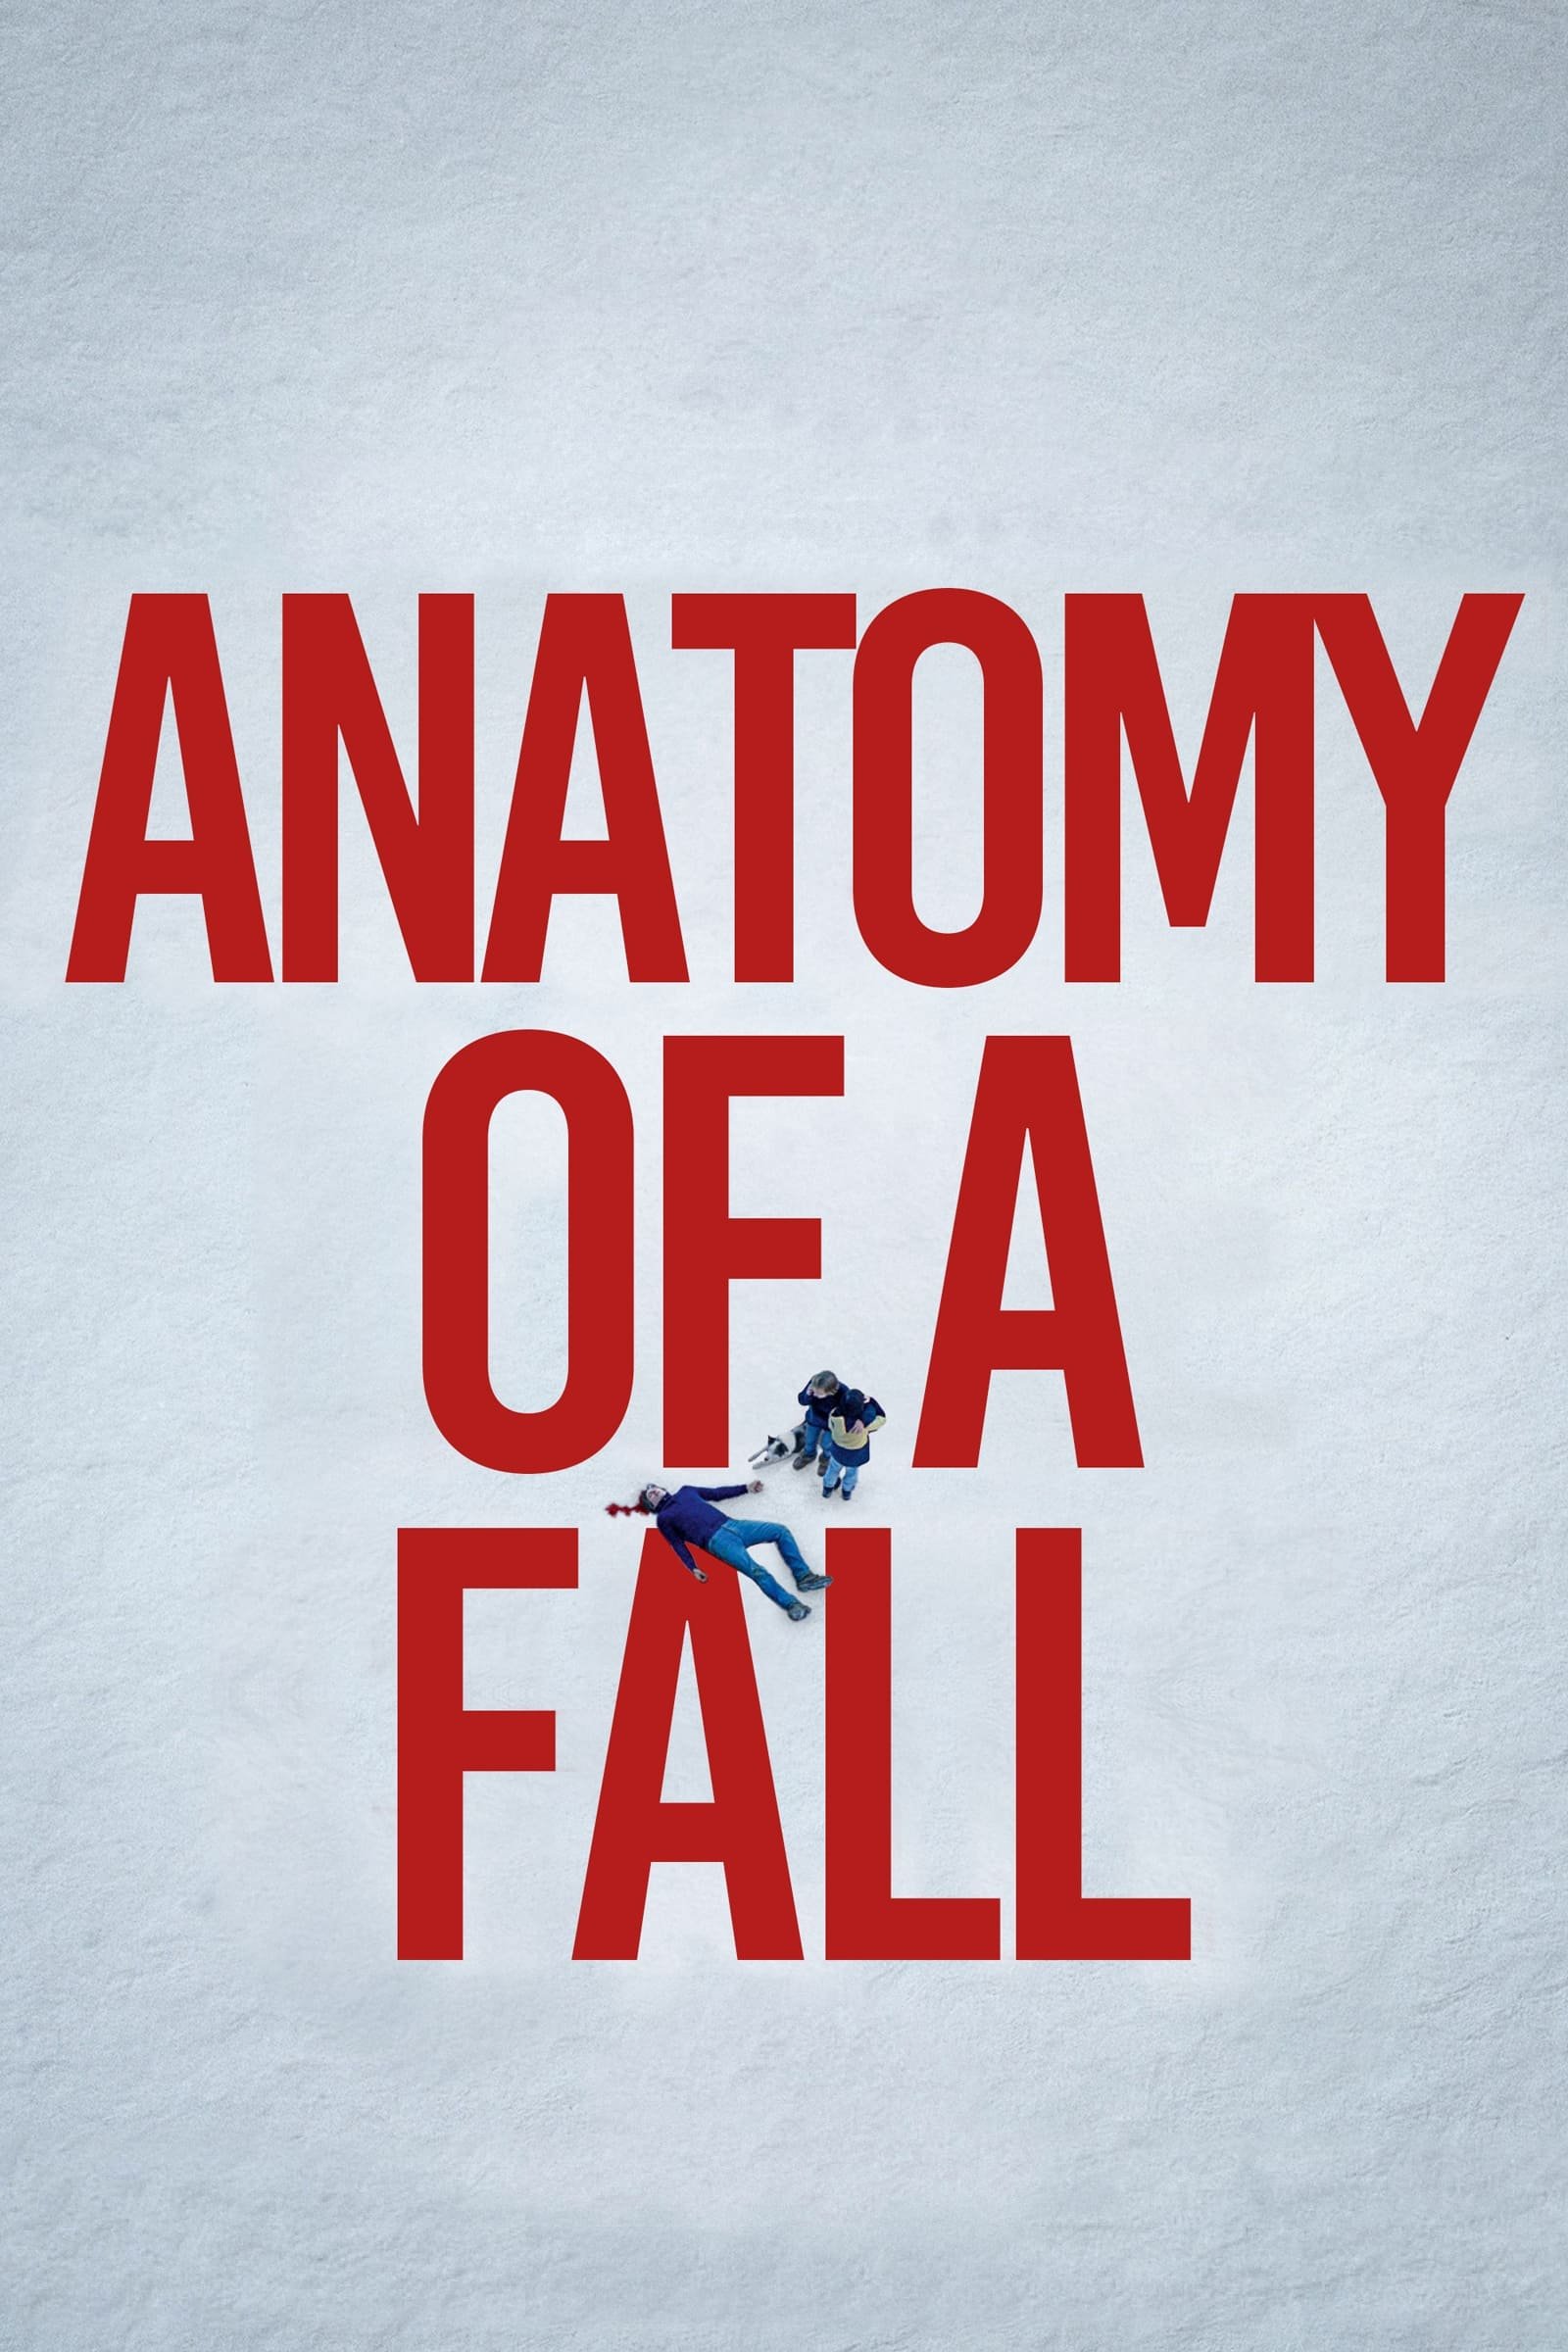 Anatomy of a Fall 2.jpeg